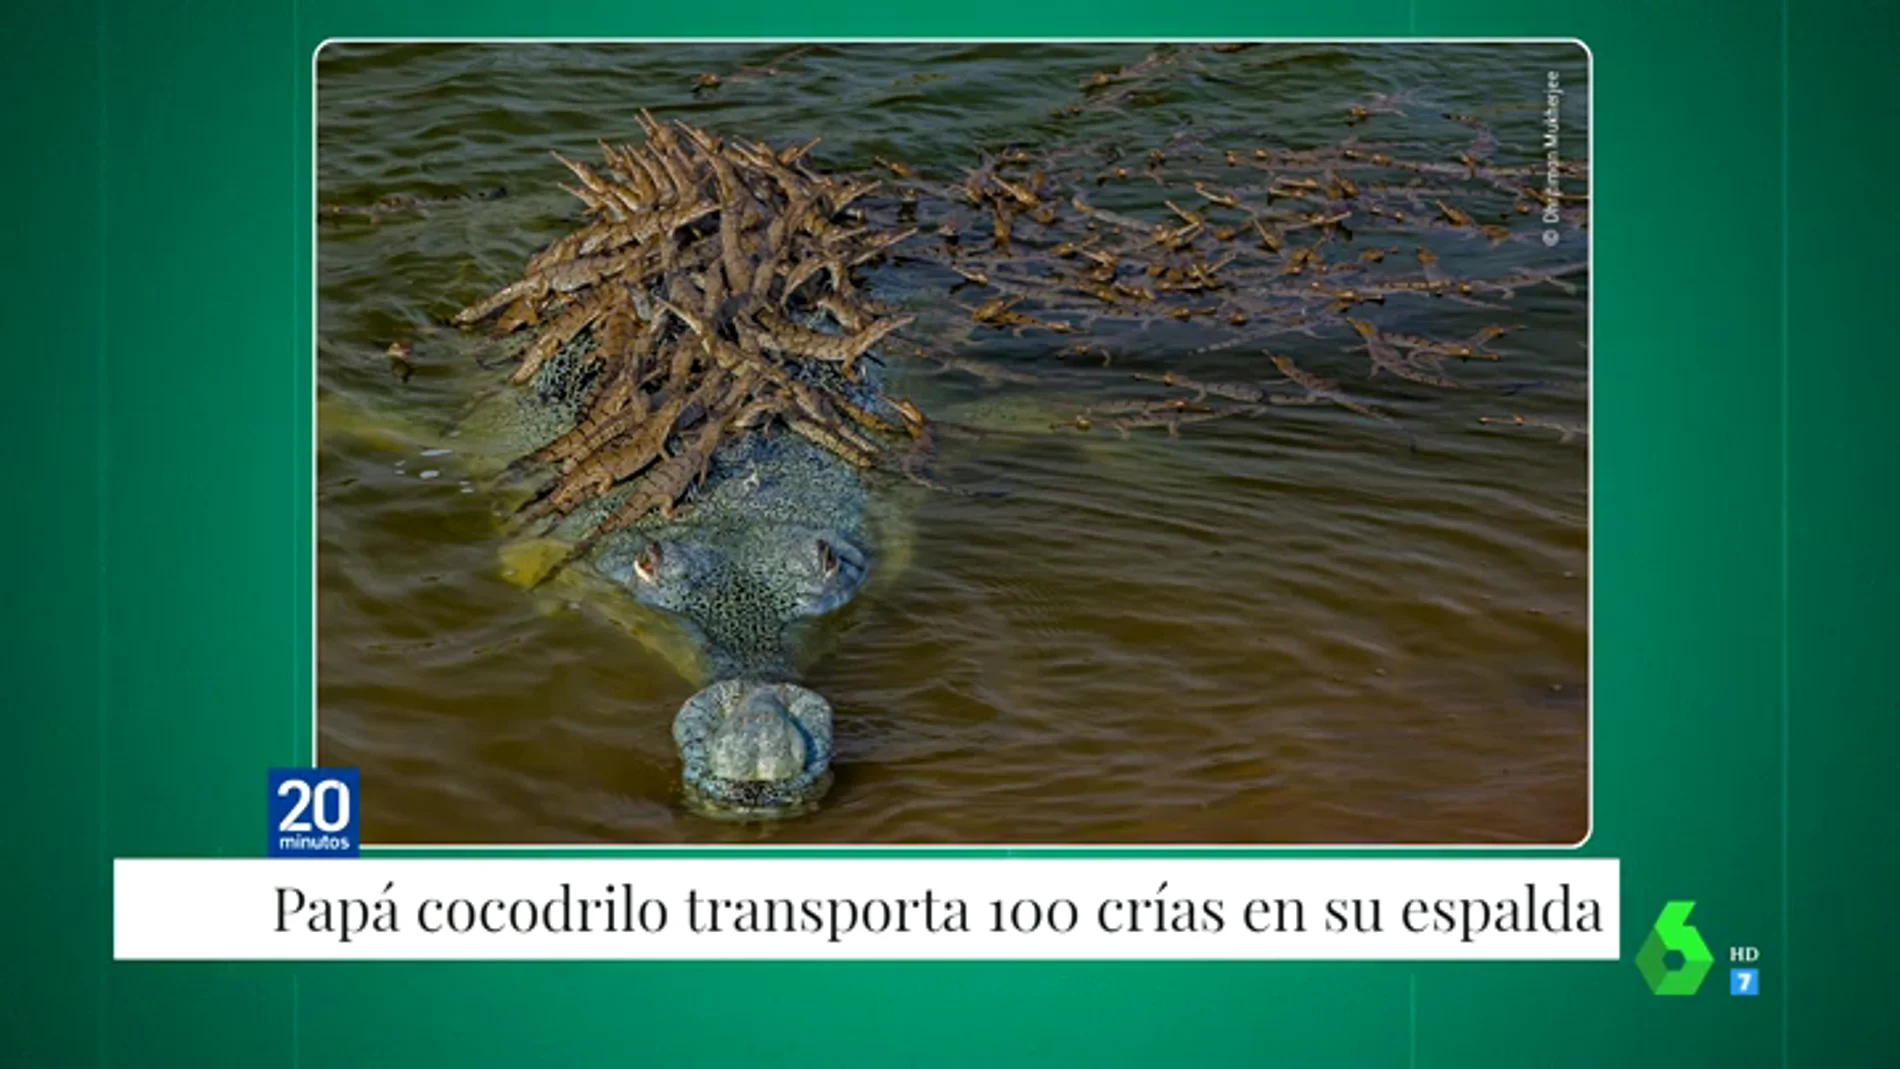 La increíble fotografía de un cocodrilo en peligro de extinción cruzando un río con sus 100 crías encima